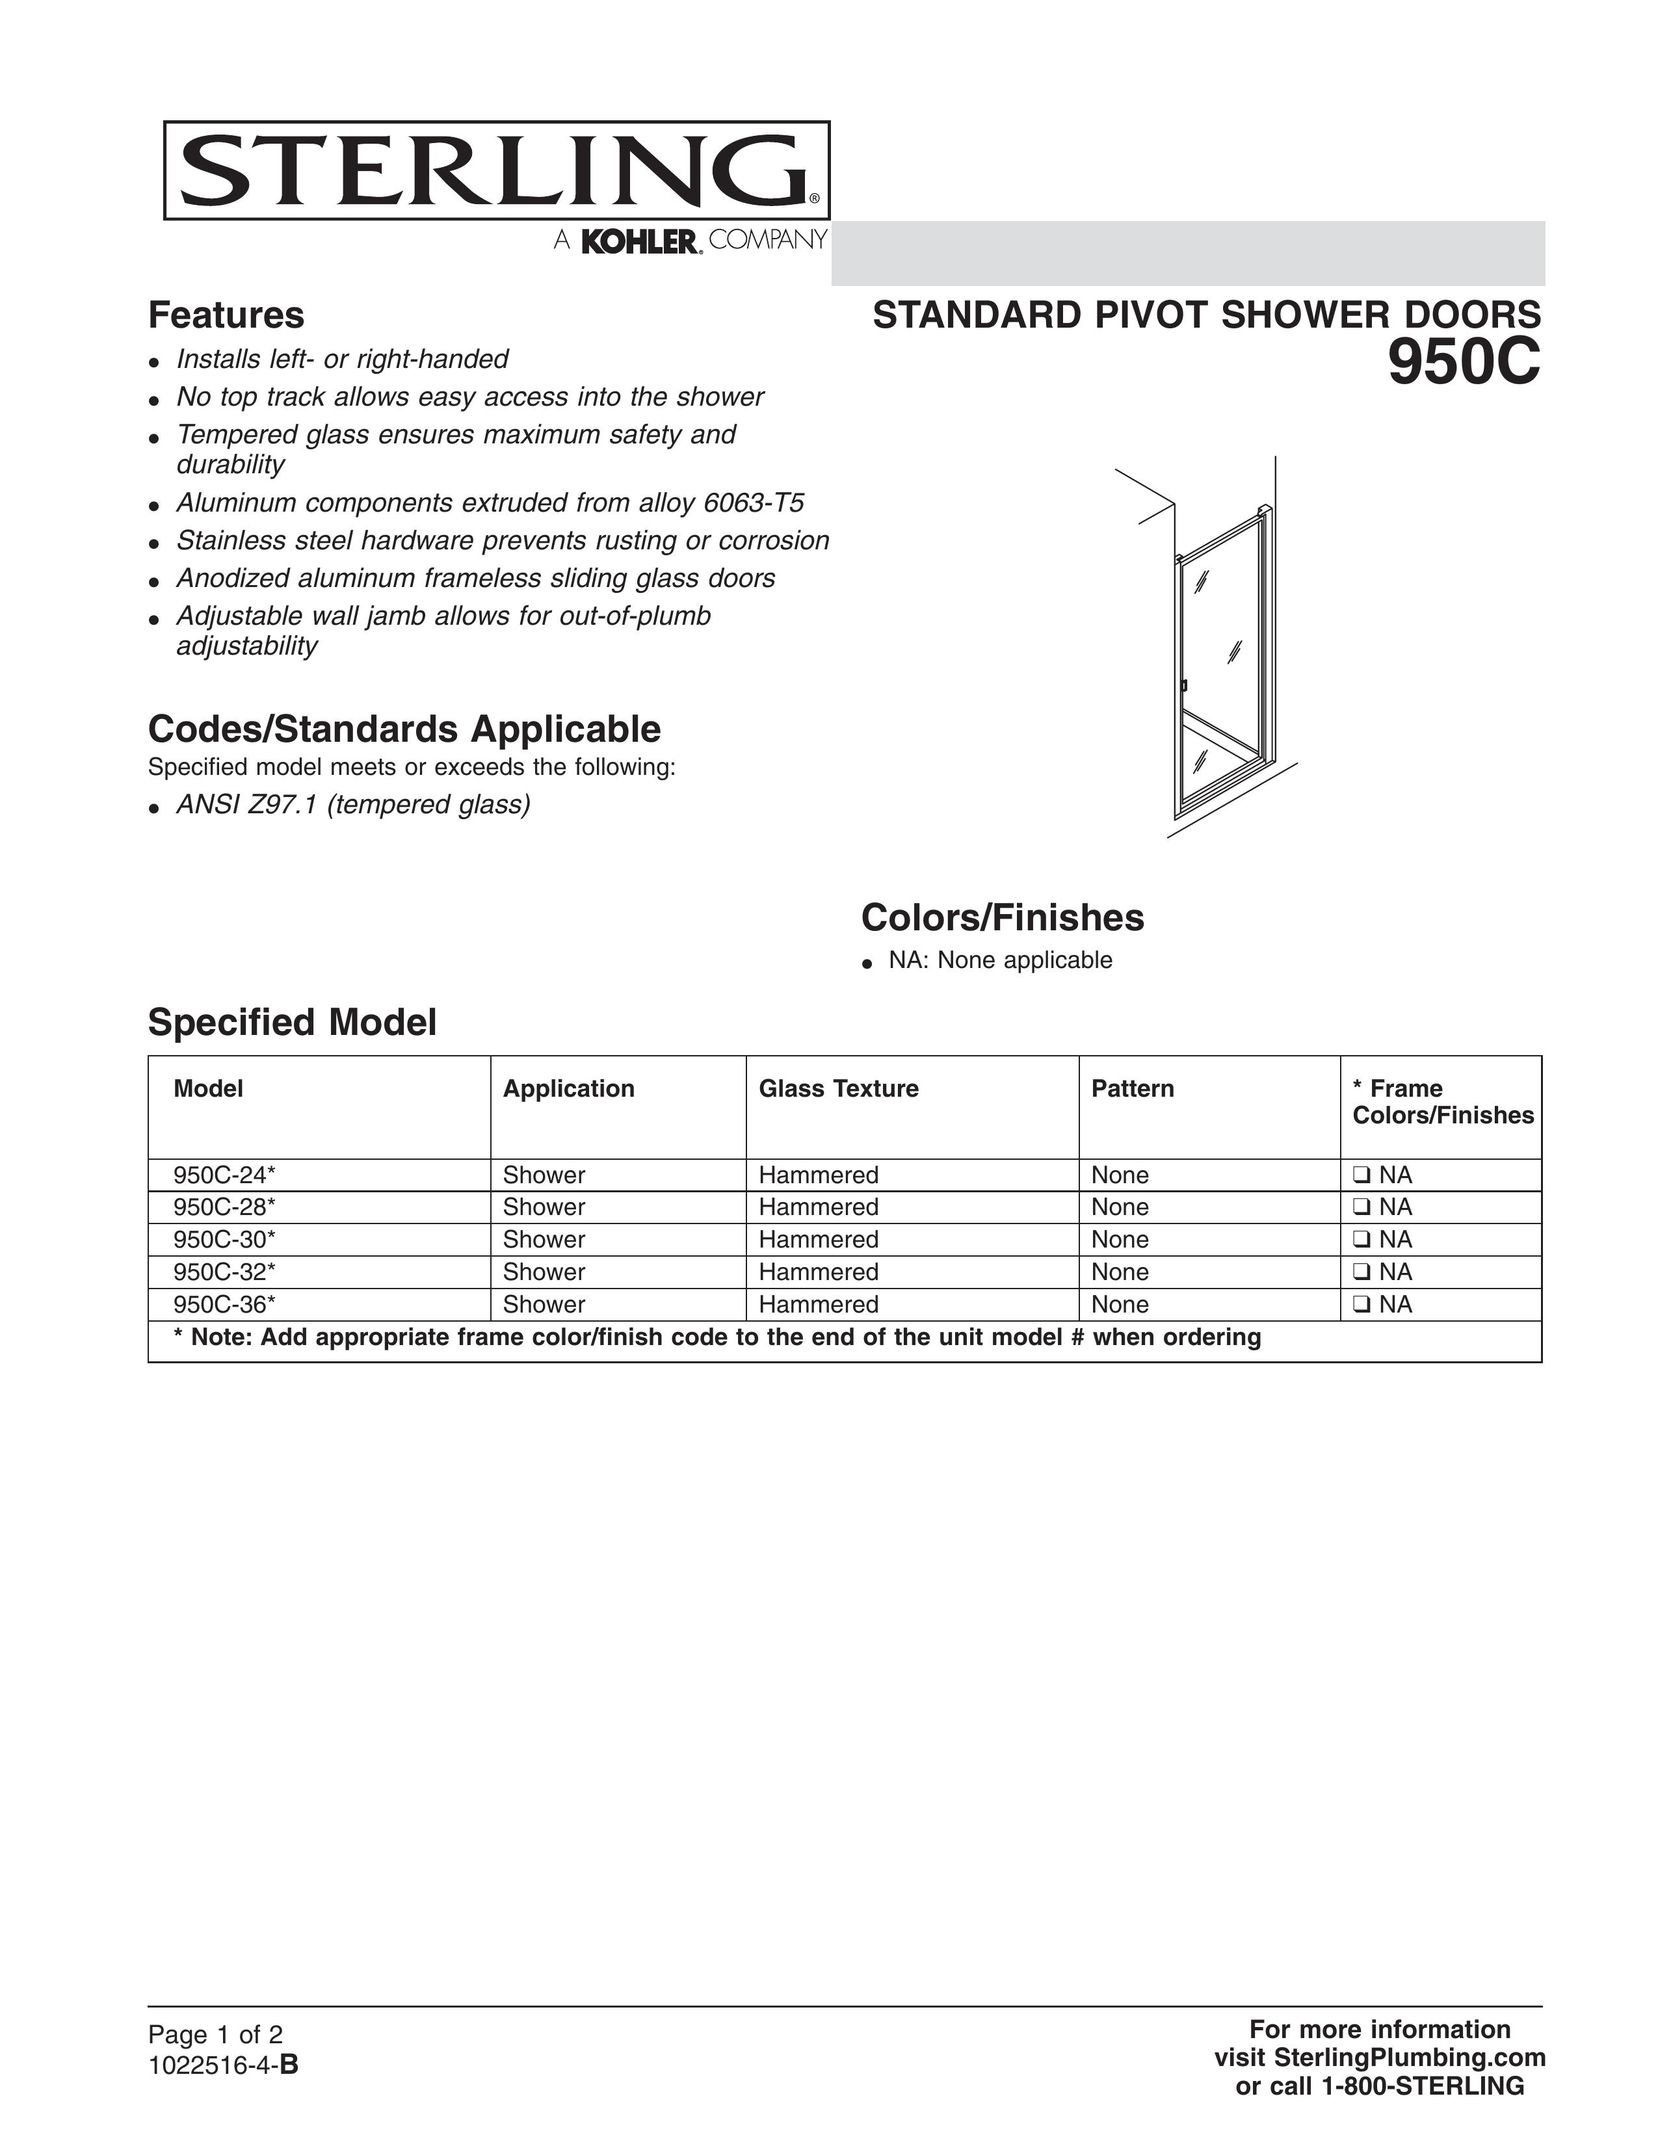 Sterling Plumbing 950C-28* Door User Manual